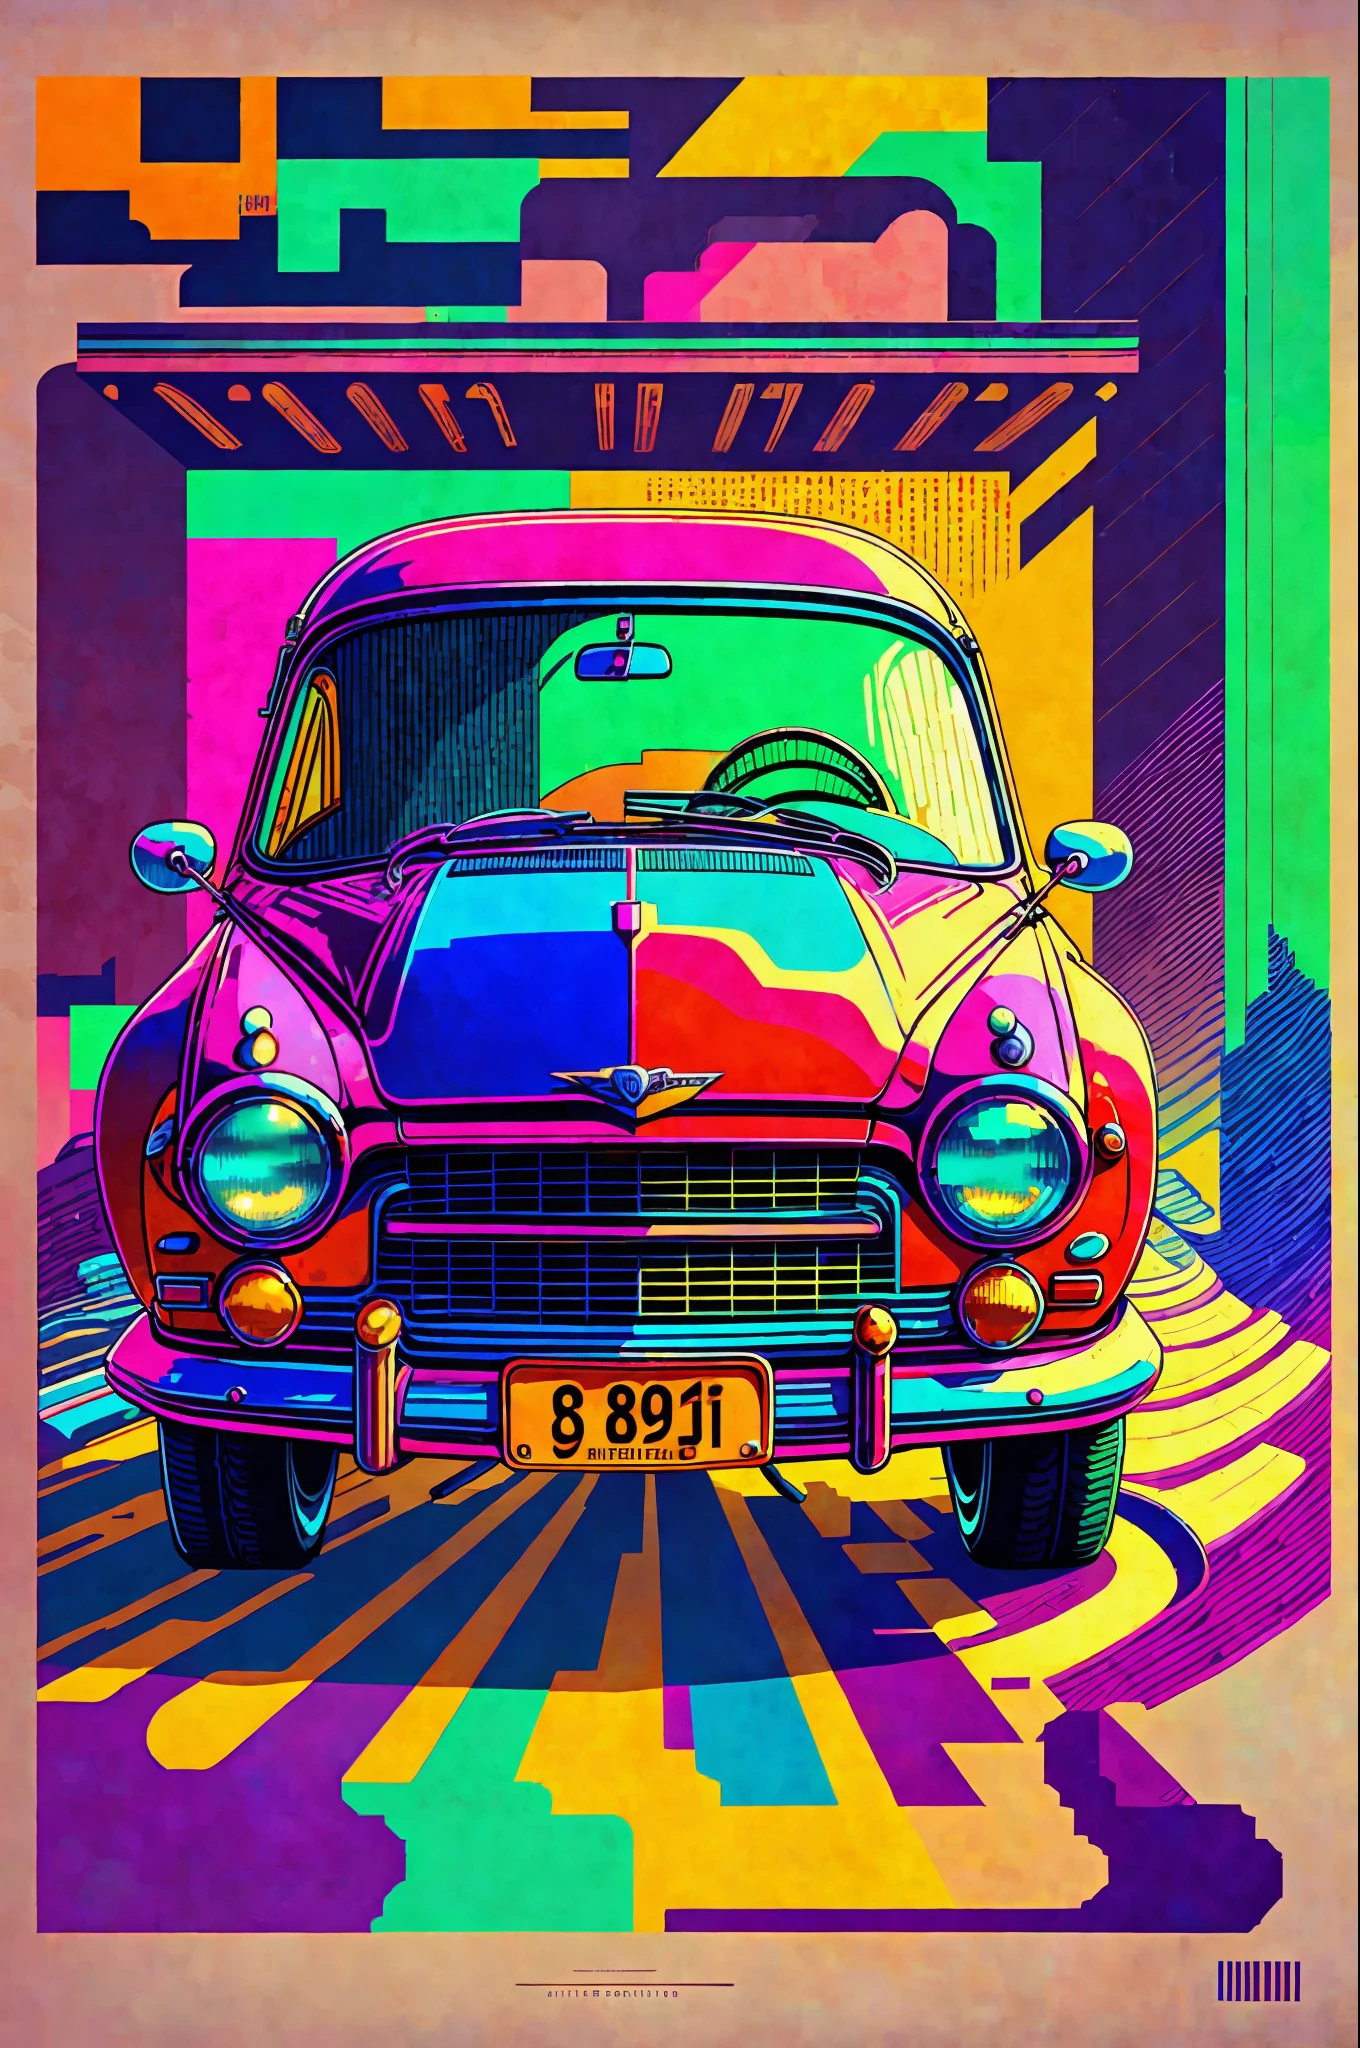 {chef-d&#39;œuvre}: pixels années 90 car. Style rétro with vibrant colors. nostalgie in prints. (Largeur: 800, Hauteur: 600, méthode: Euler, pas: 20, Échelle CFG: 10, graine: 12345, haut de gamme: 2)
MOTS CLÉS: chef-d&#39;œuvre, voiture, pixels, années 90, Style rétro, couleurs vives, nostalgie. --auto --s2